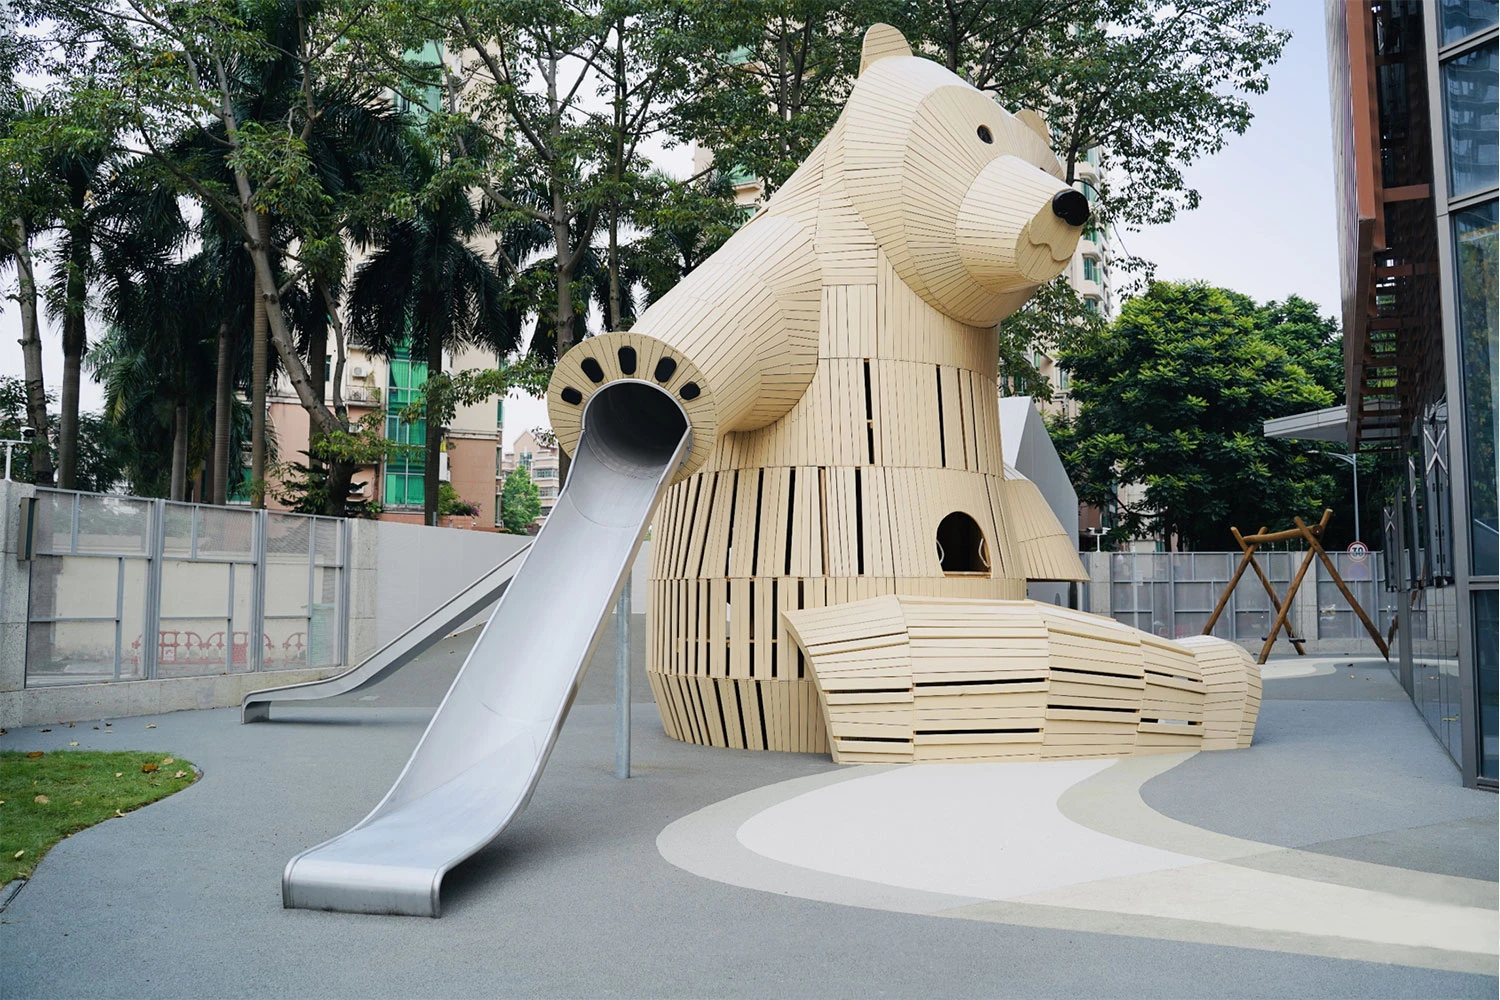 Spielplatzskulptur aus Holz in Form eines großen Bären im Kindergarten in China